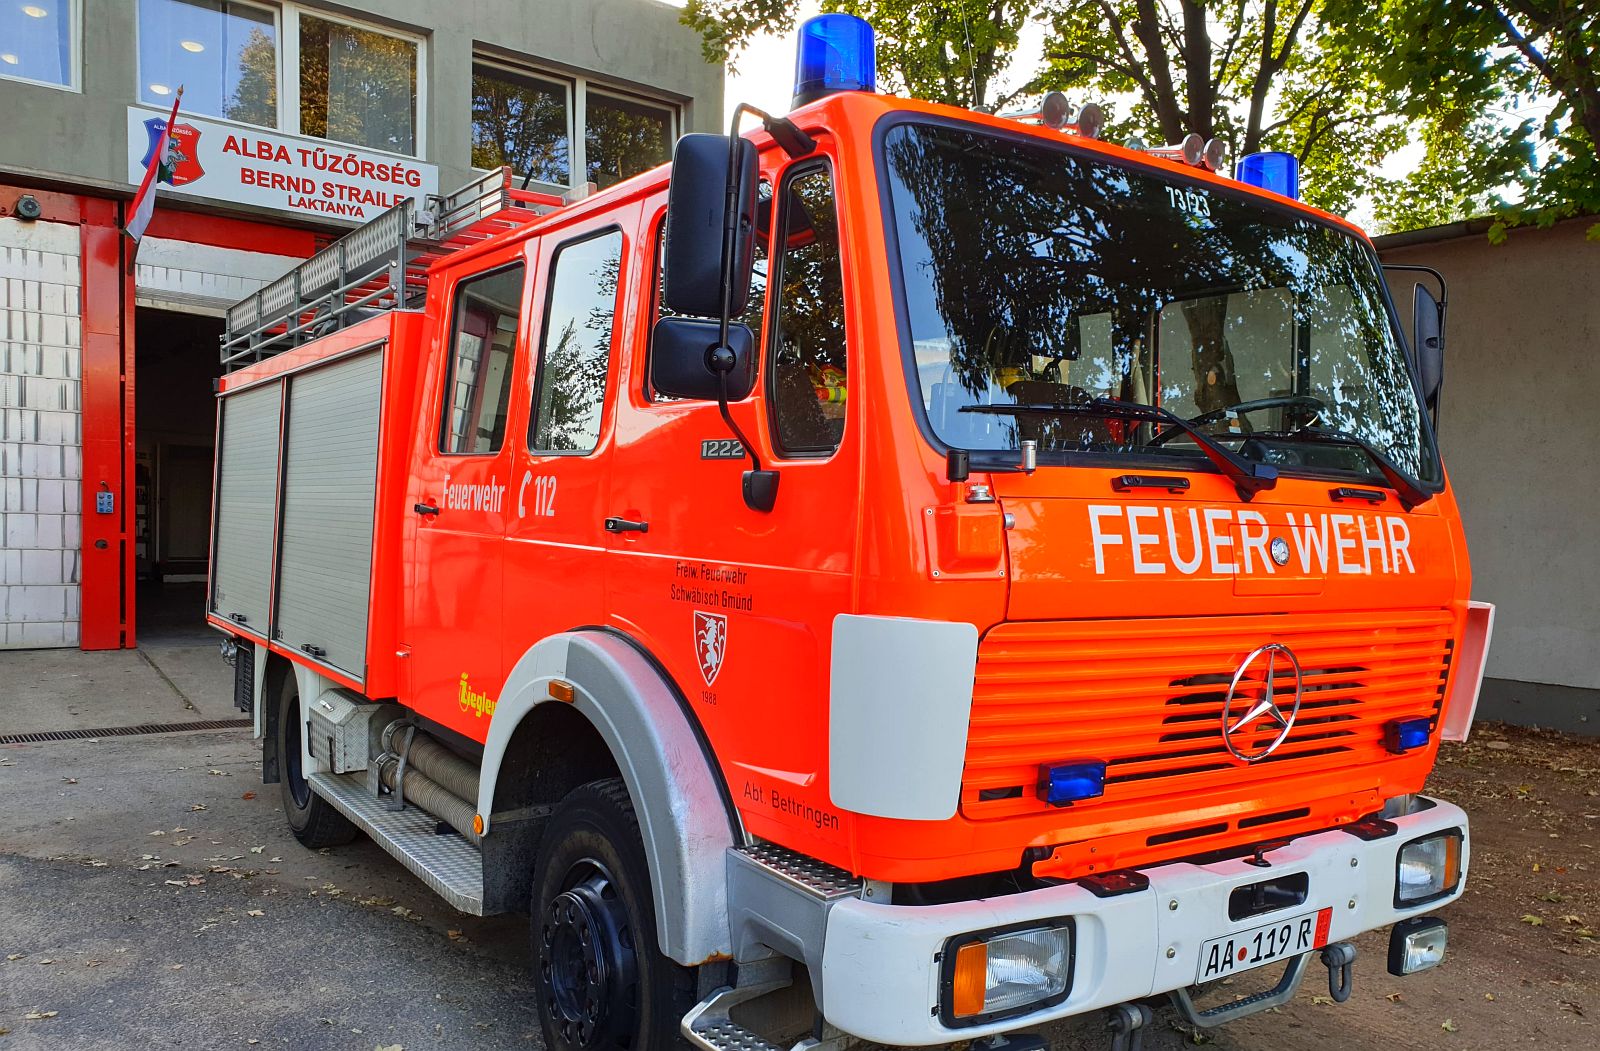 Újabb német tűzoltó autóval gyarapodott a Fehérvári Tűzoltó Egyesület